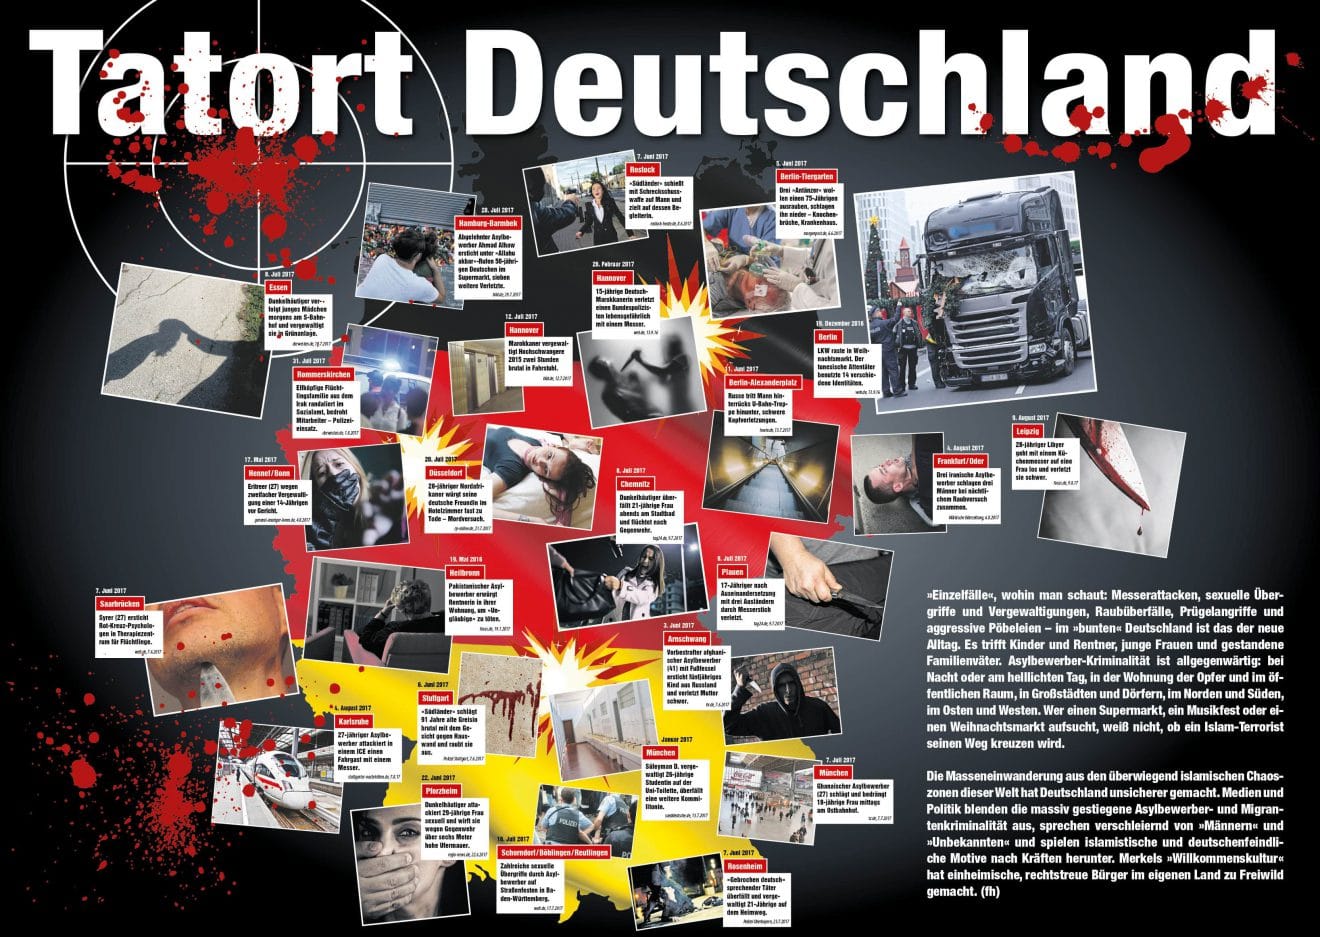 Tatort Deutschland: Mordrate unter Kanzlerin Angela Merkel um 100 Prozent gestiegen